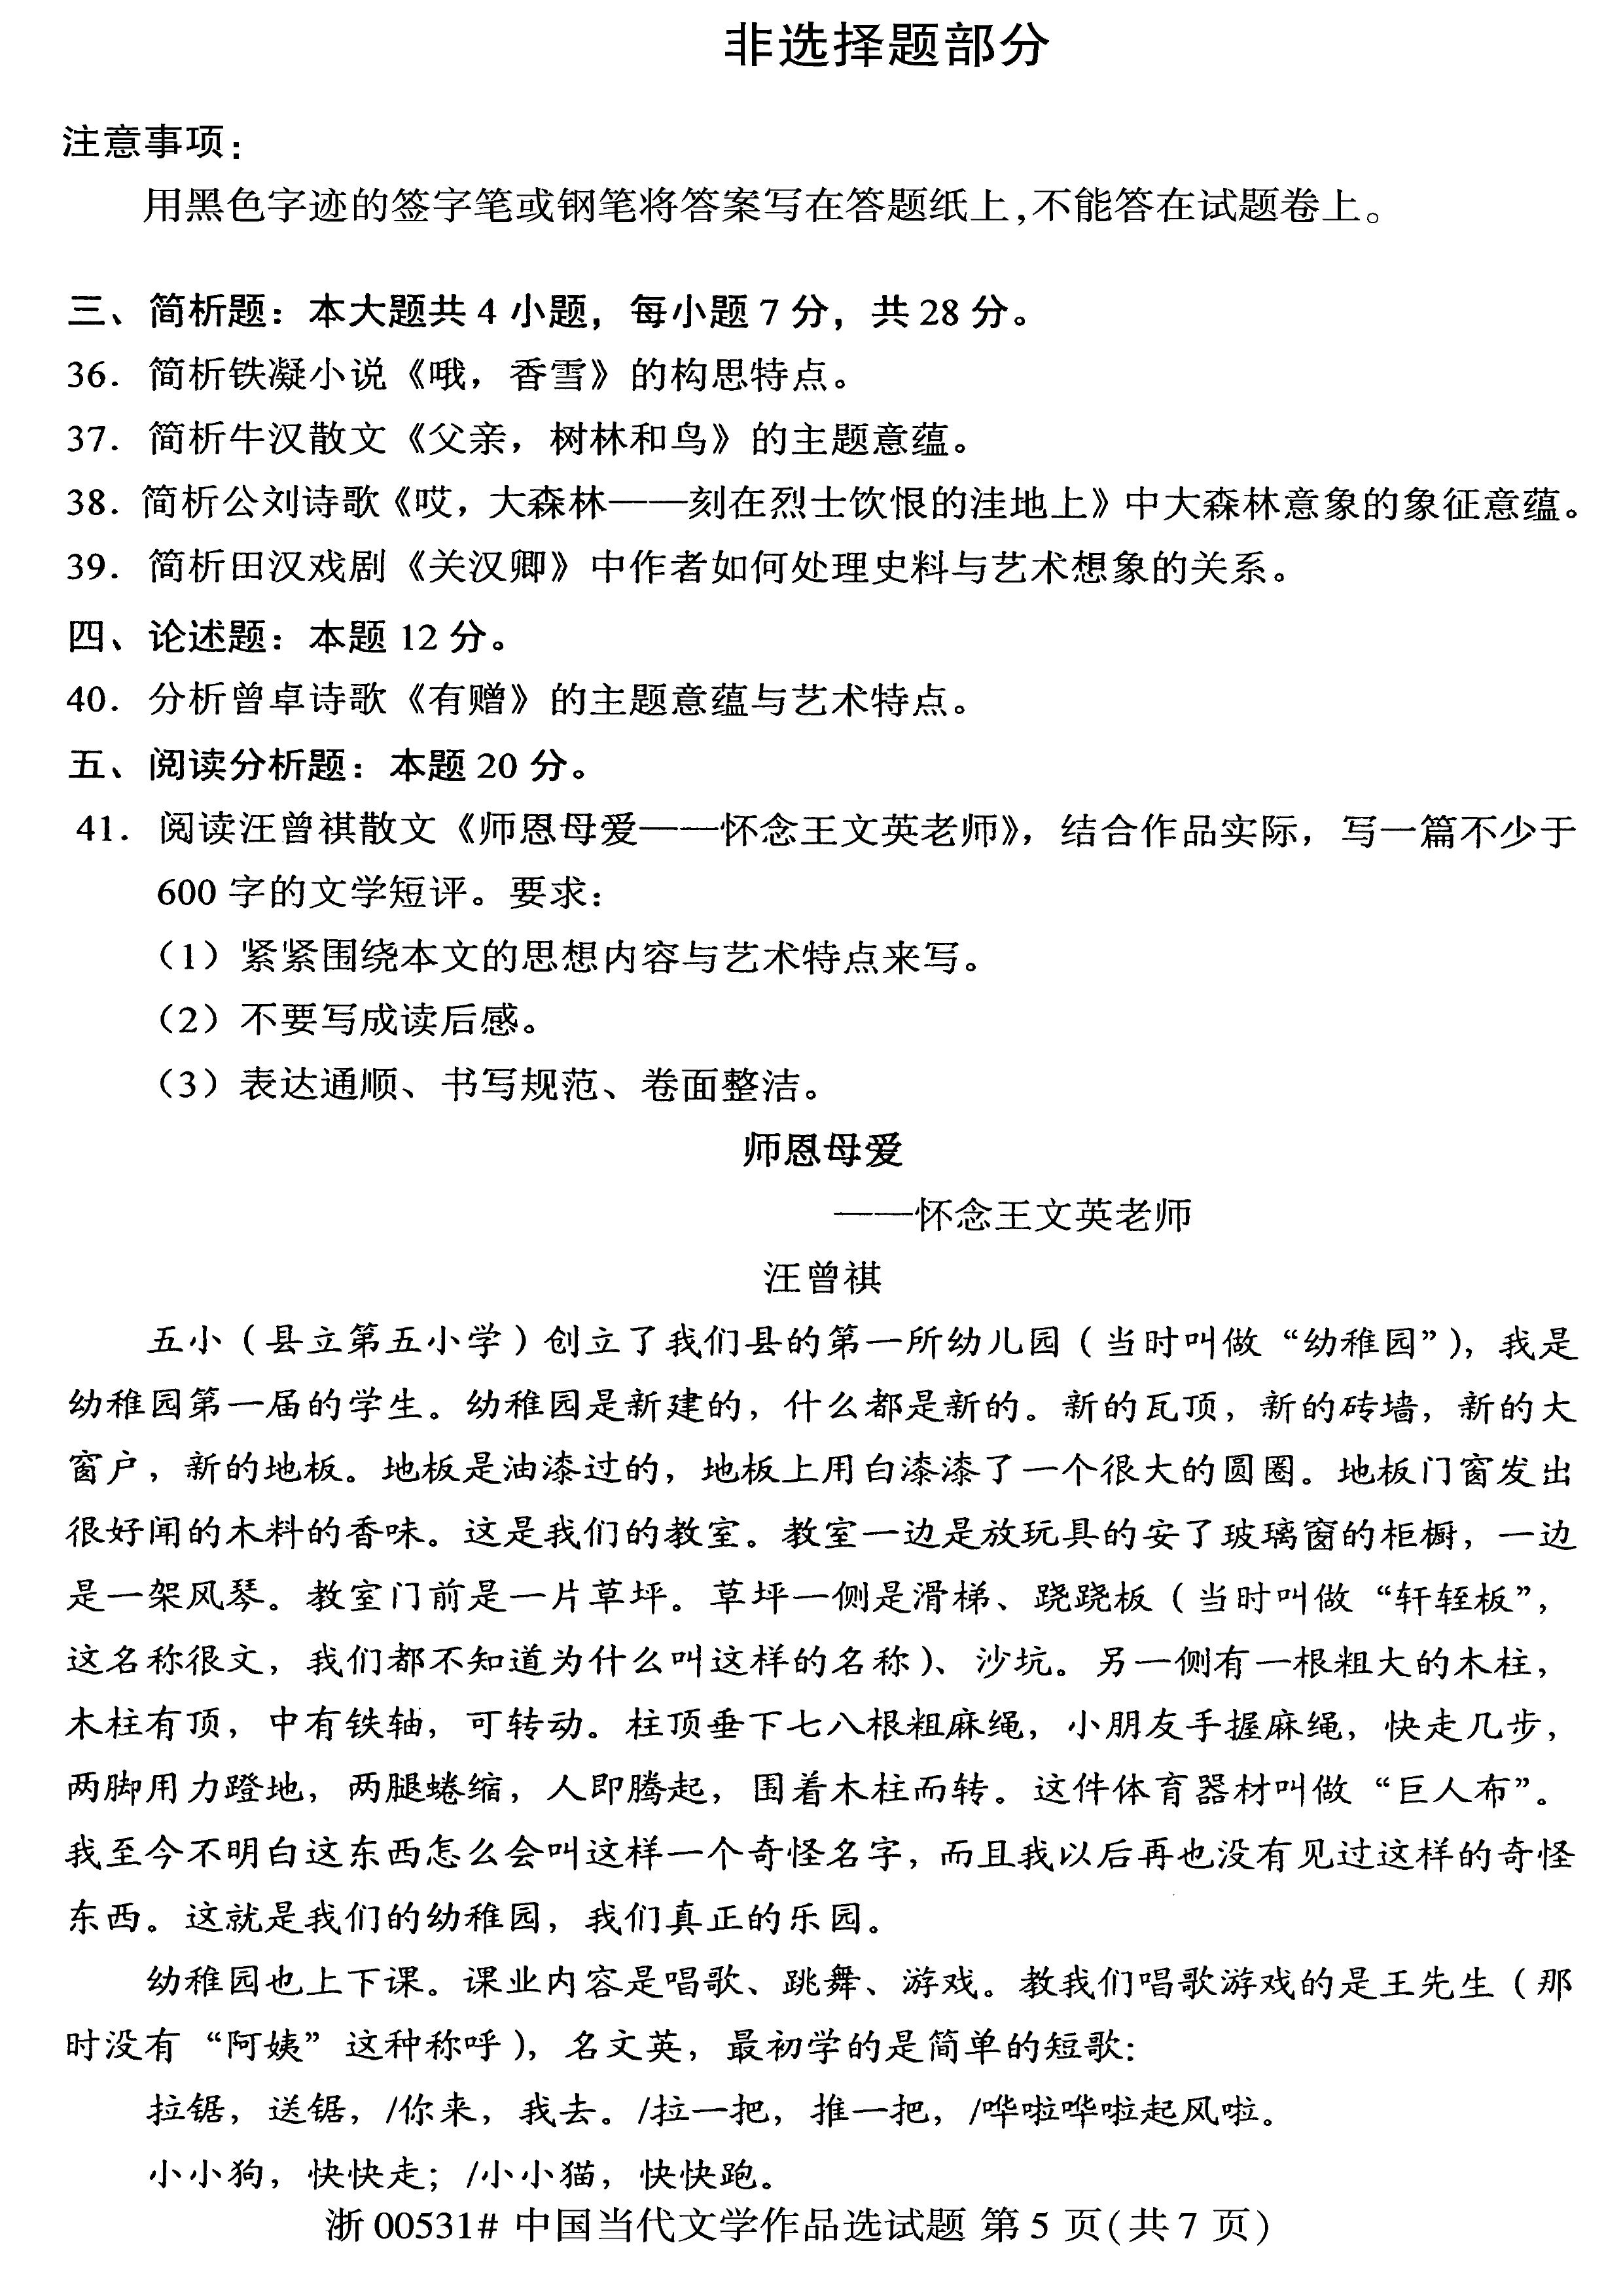 贵州省2019年10月自考00531中国当代文学作品选真题及答案